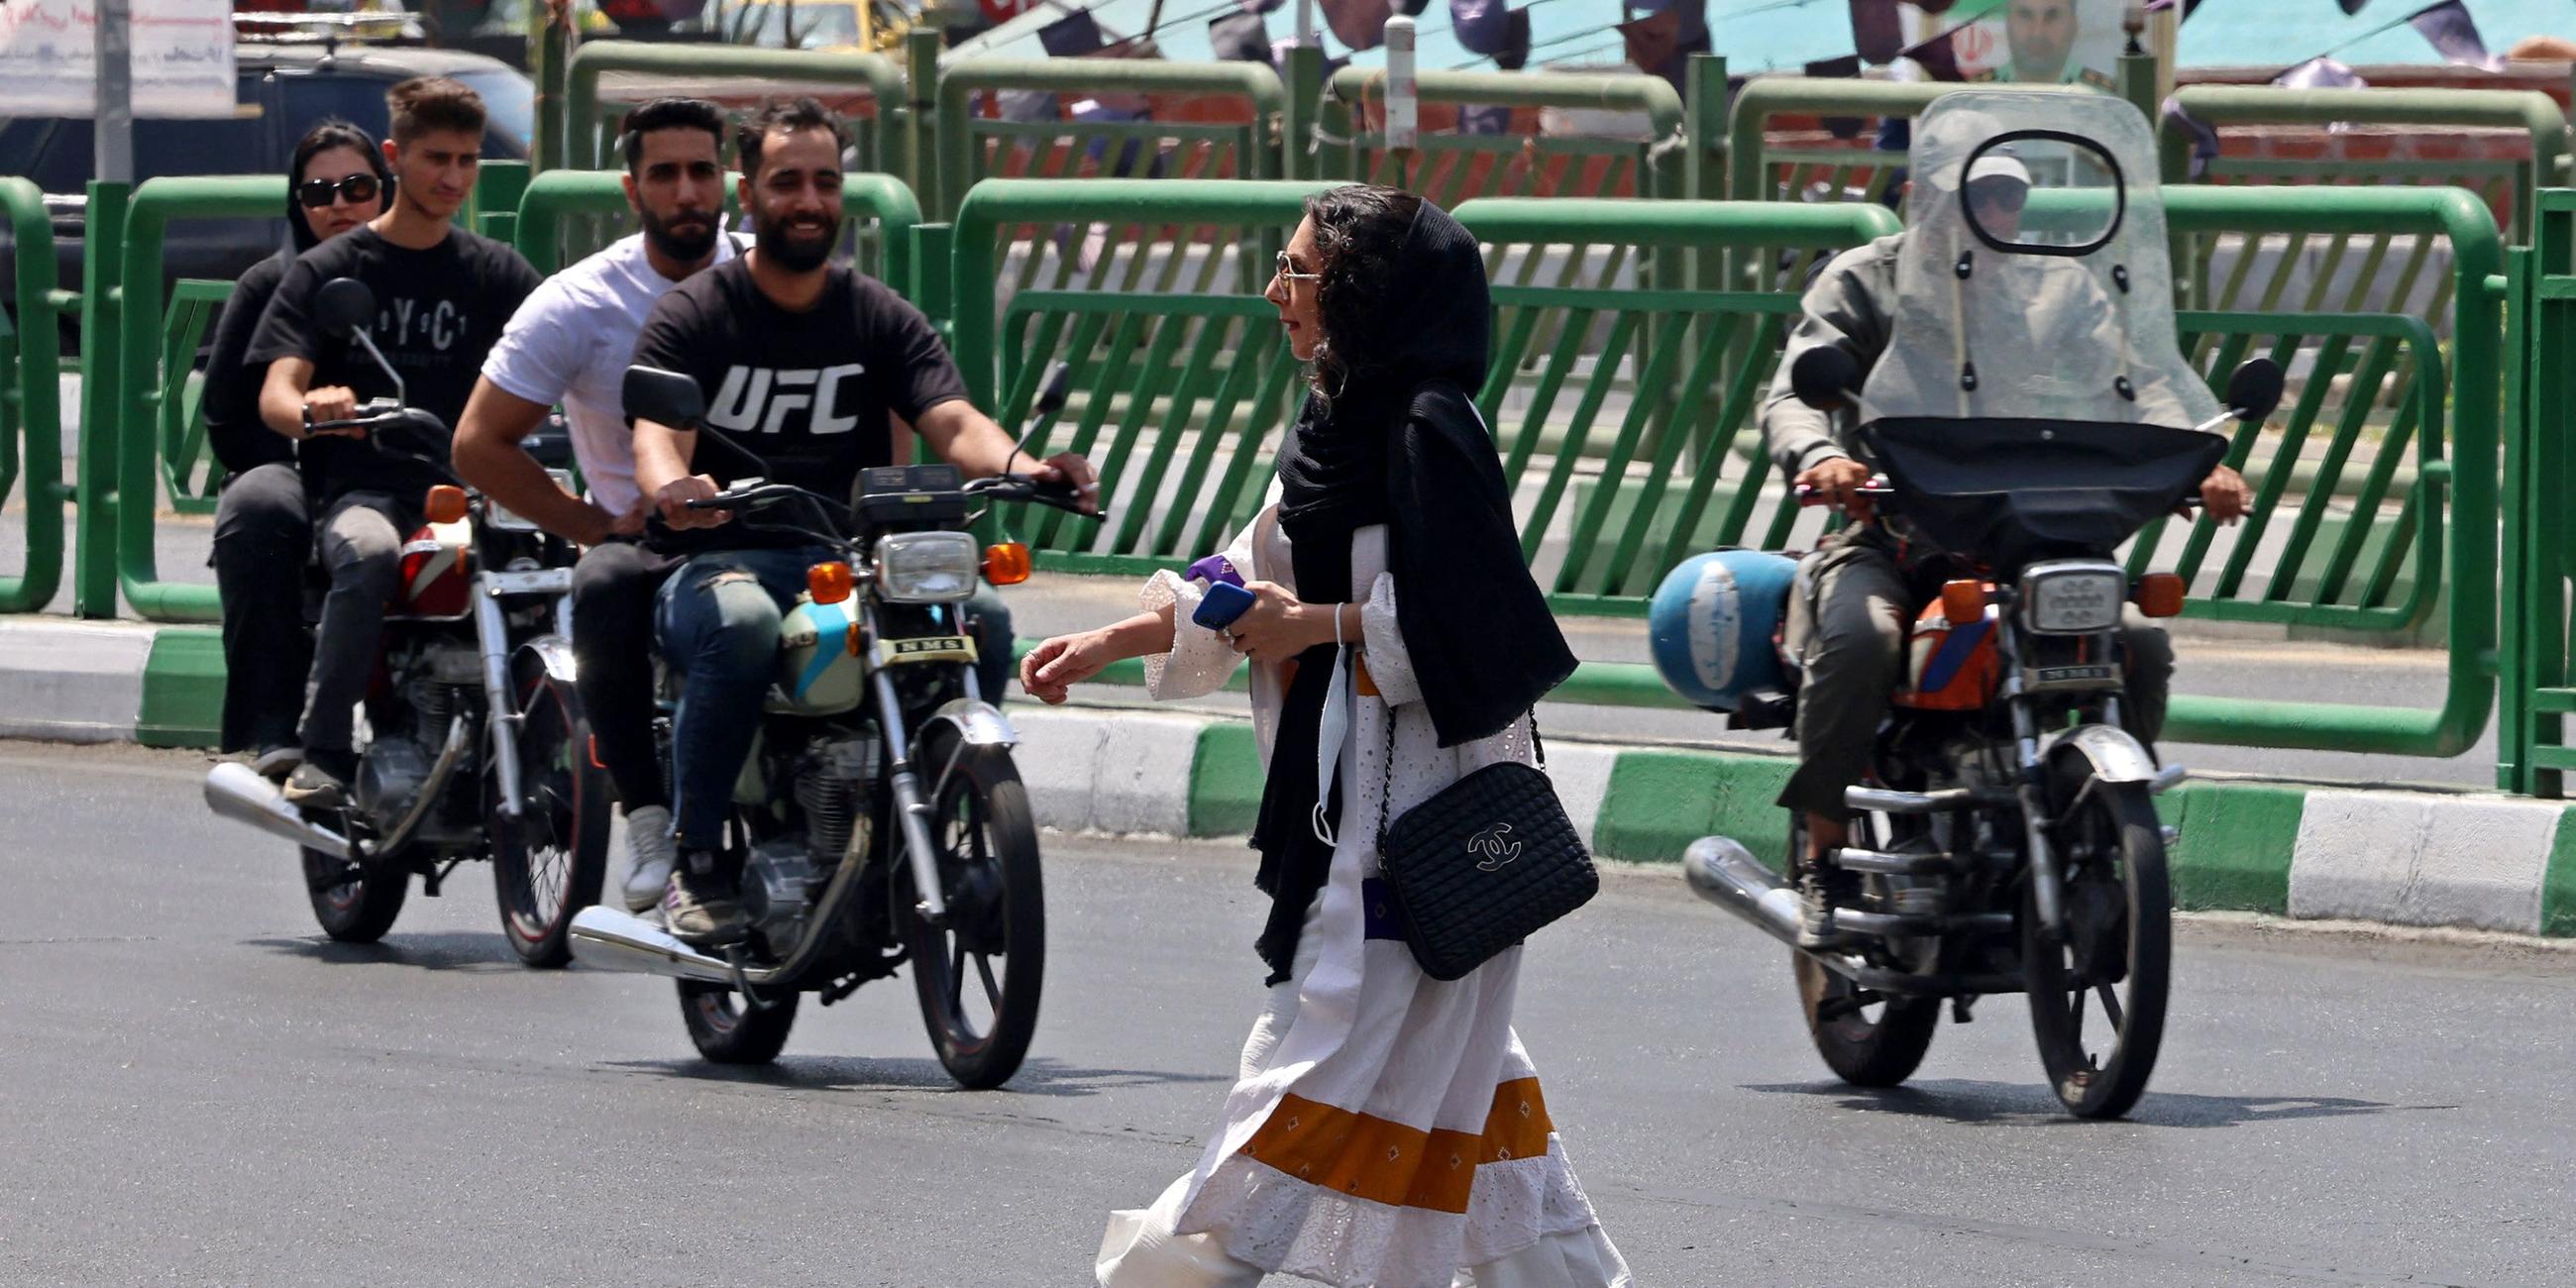 Eine Frau mit Kopftuch überquert die Straße, hinter ihr fahren mehrere Männer auf Motorrädern.